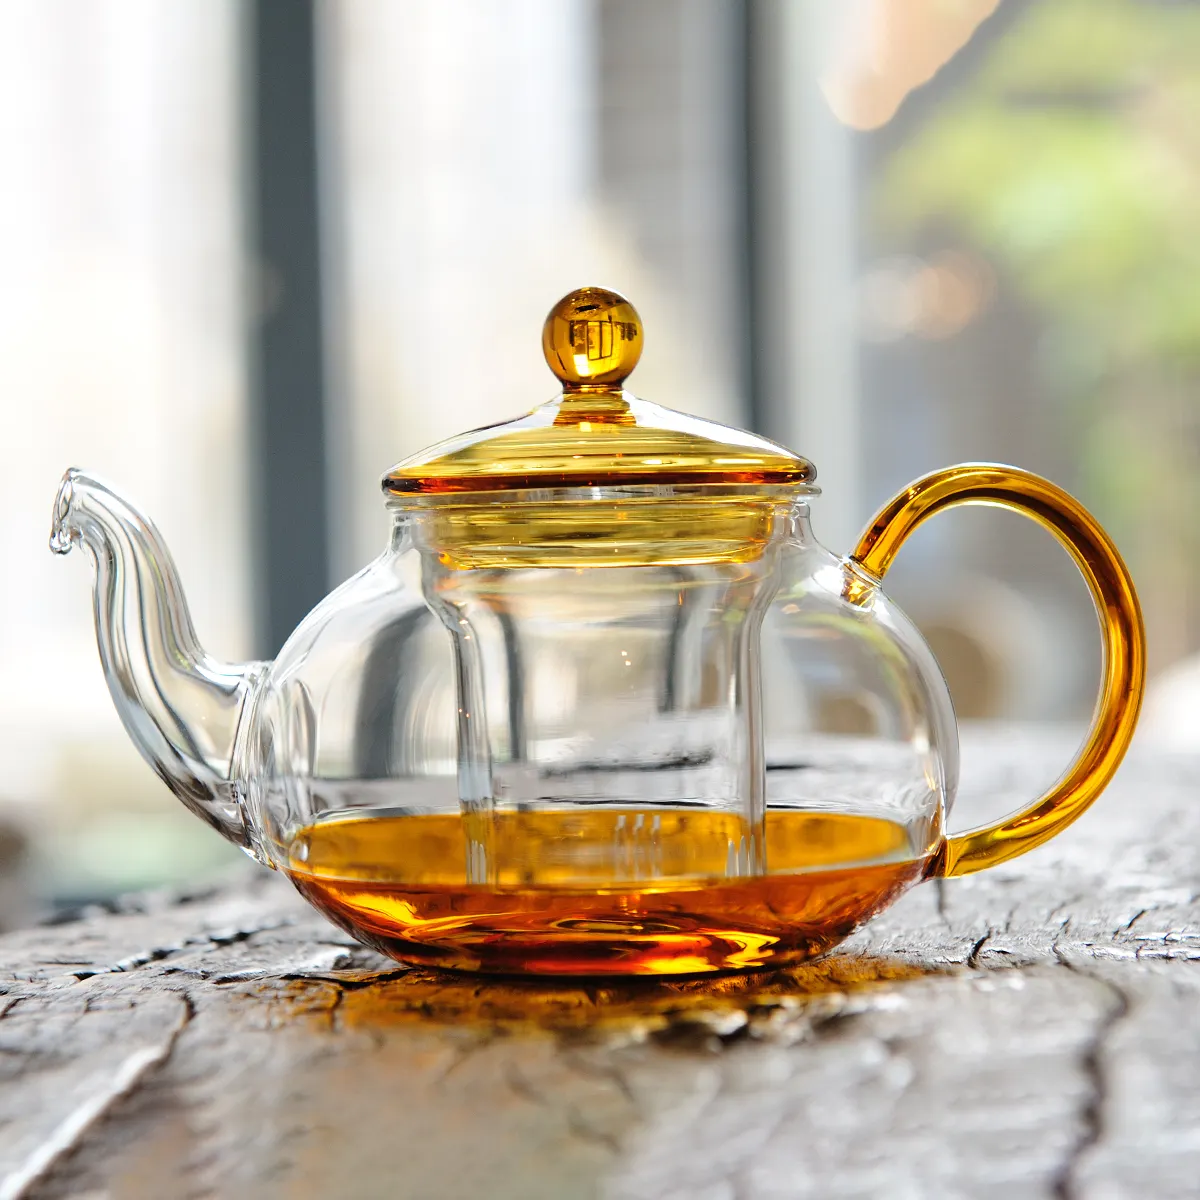 Conjunto de bule de chá em vidro borossilicato de alta qualidade personalizado, bule de vidro com 4 xícaras, infusor e filtro, aquecedor de cor, ideal para chá